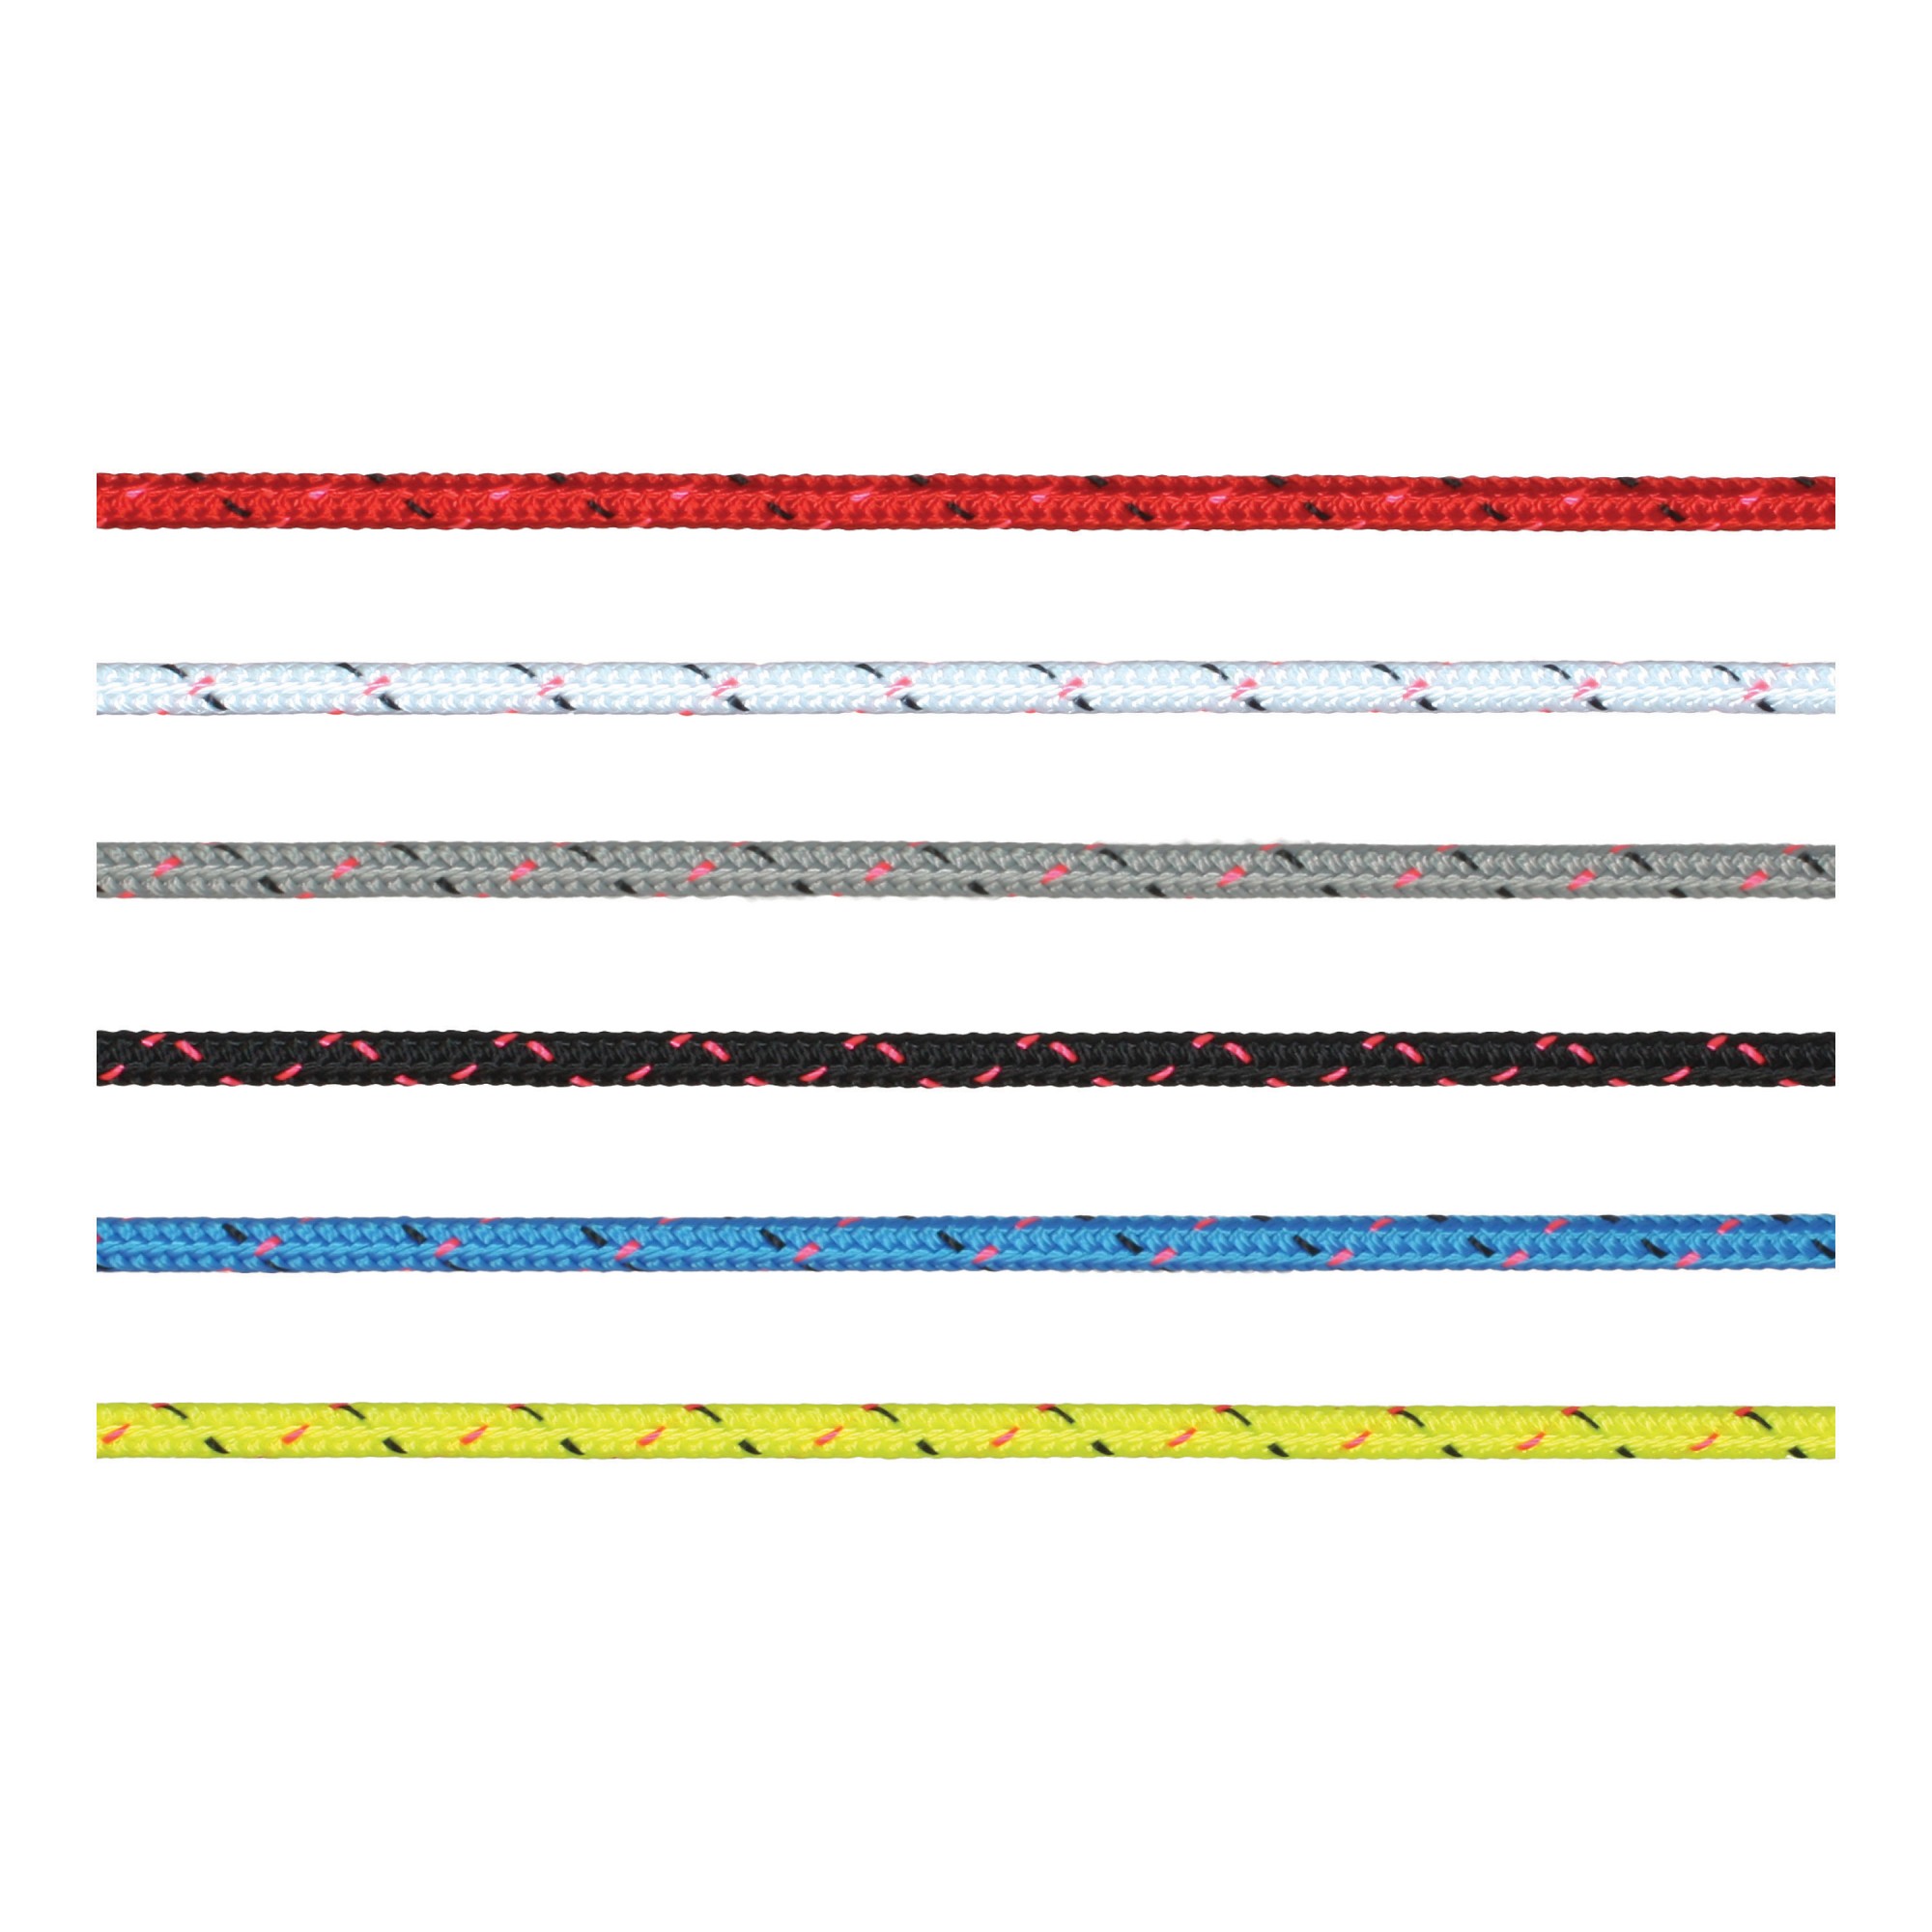 Трос Marlow Excel Pro из полиэстера красного цвета 200 м диаметр 3 мм, Osculati 06.465.03RO